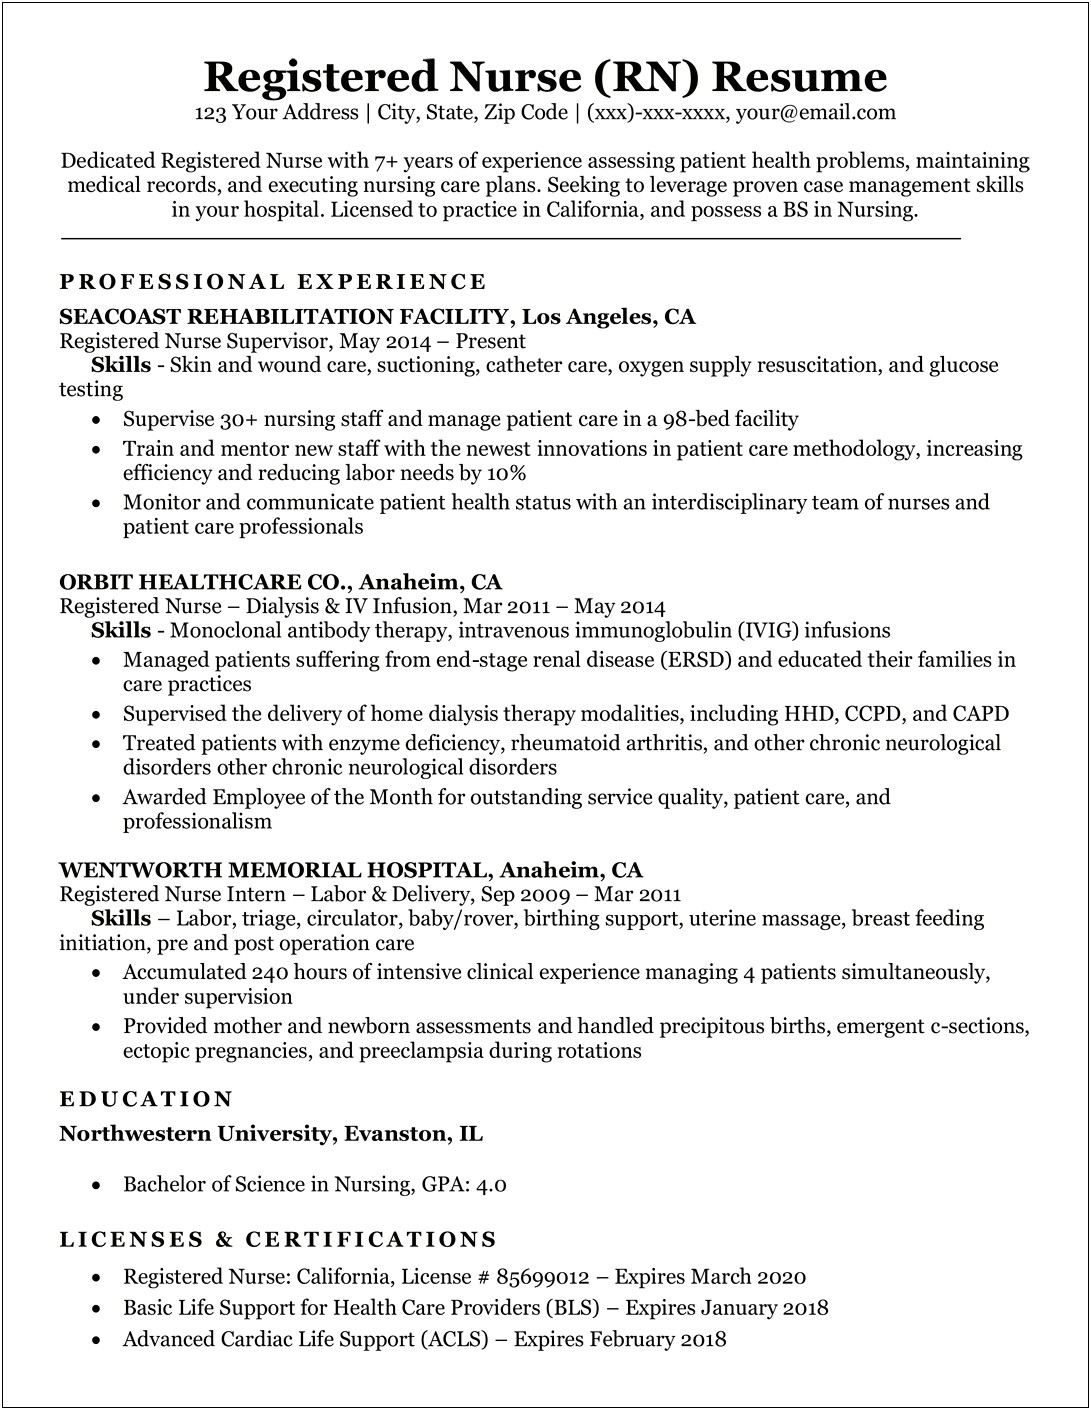 Professional Description For Resume Registered Nurse